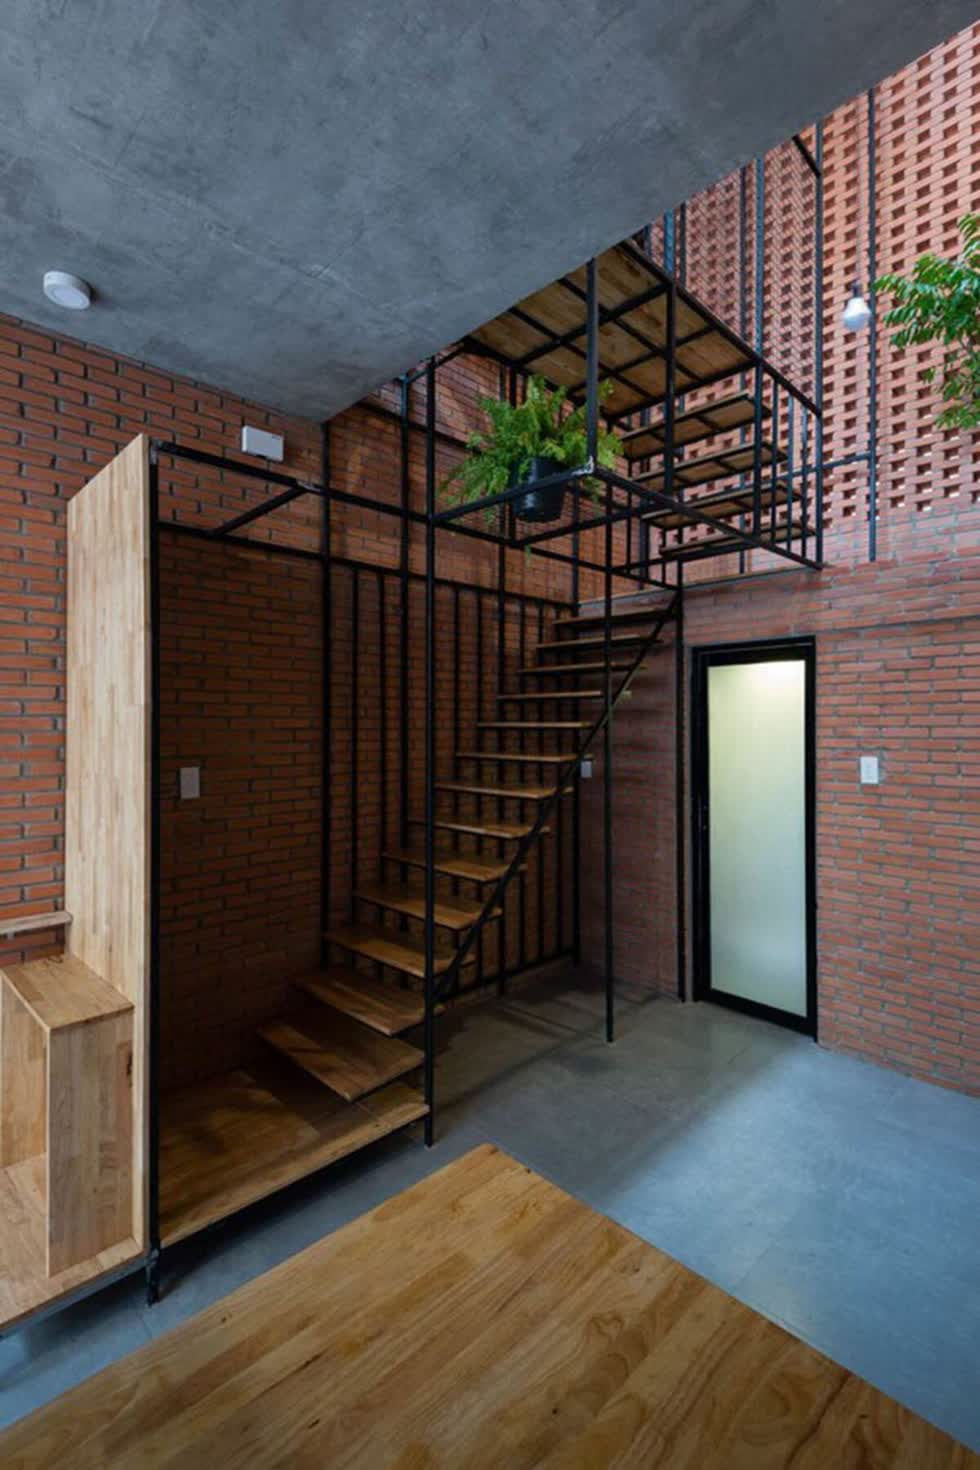 Kiến trúc sư cũng đã khéo léo thiết kế cầu thang được đặt ở góc nhà, với hệ kết cấu thép tạo nên sự thanh mảnh, thông thoáng cho căn nhà nhỏ.